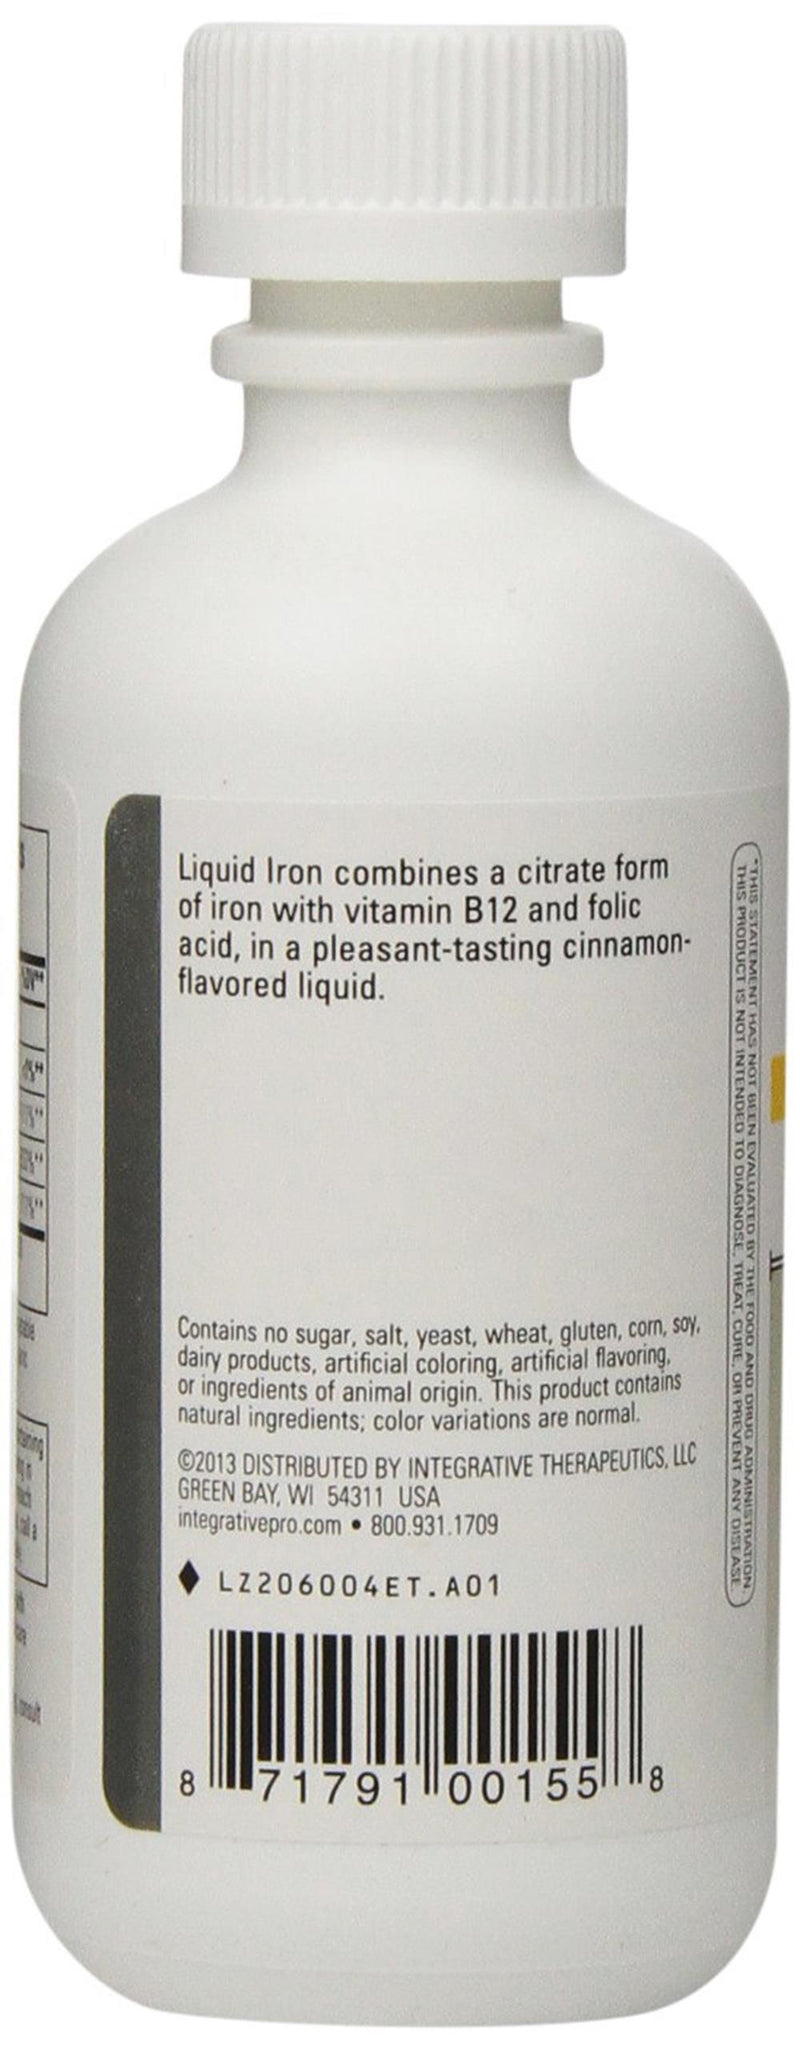 Integrative Therapeutics Liquid Iron Cinnamon Flavor -- 6 fl oz